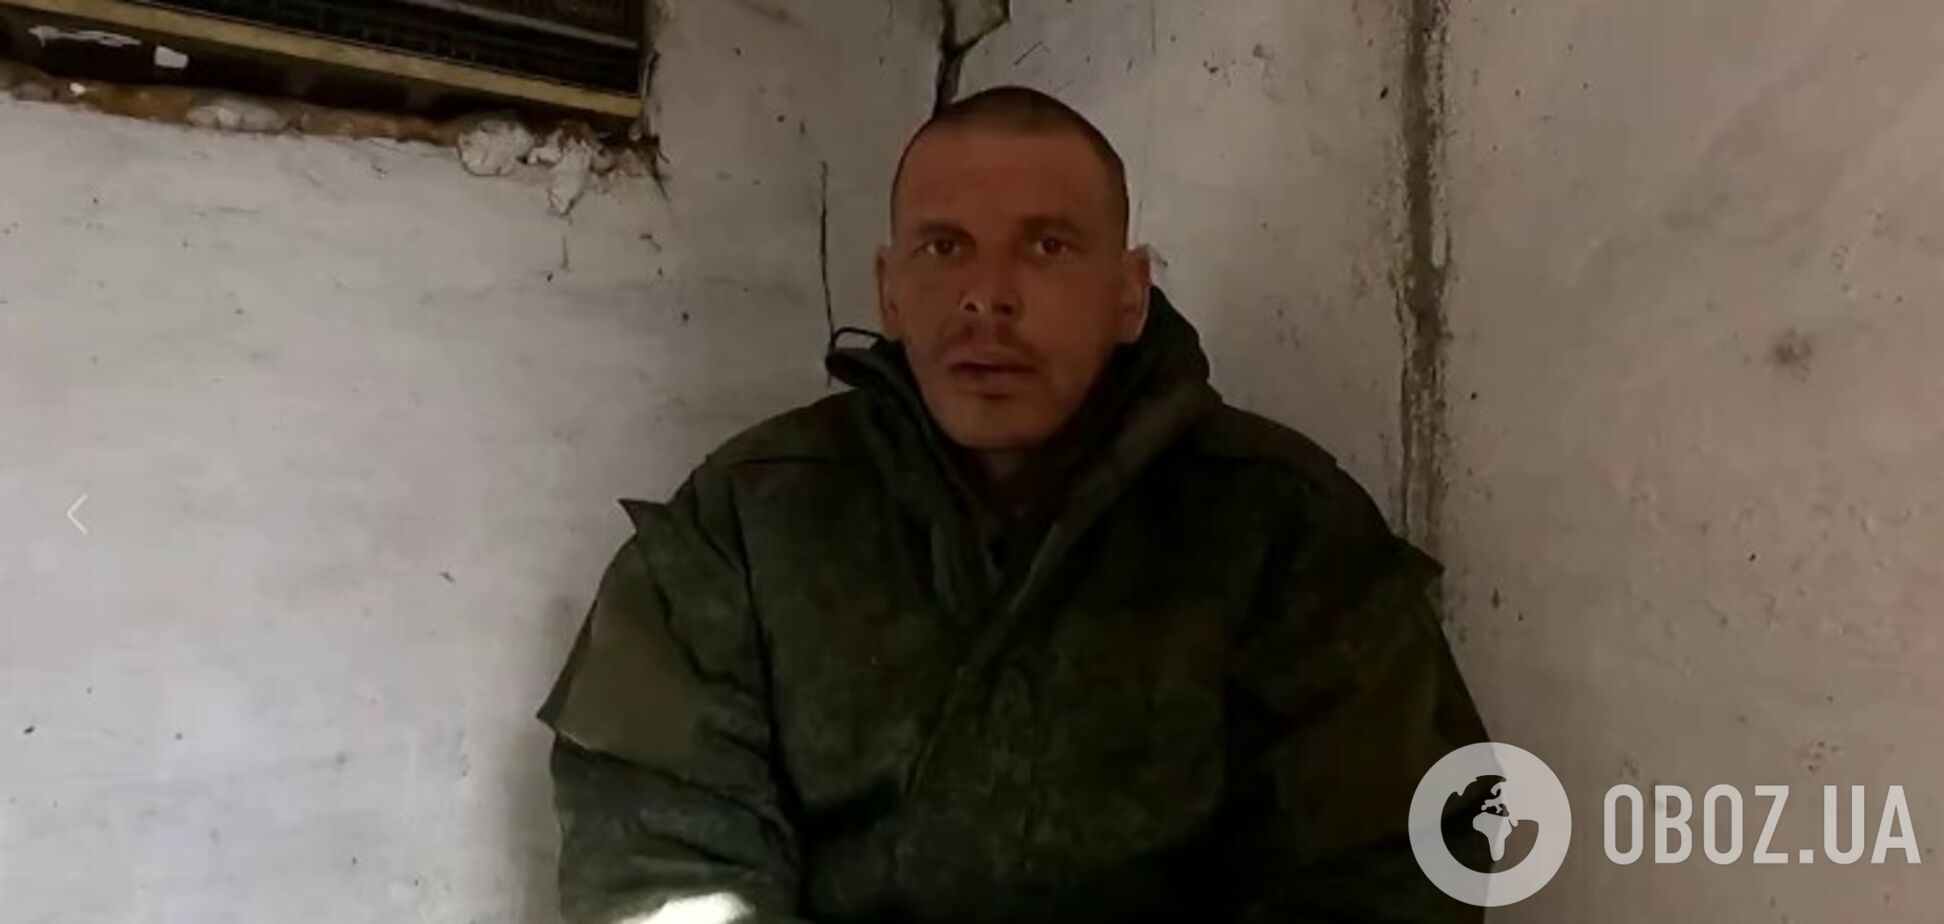 Бросили на передовую без подготовки: пленный оккупант рассказал, почему решил сдаться украинцам. Видео